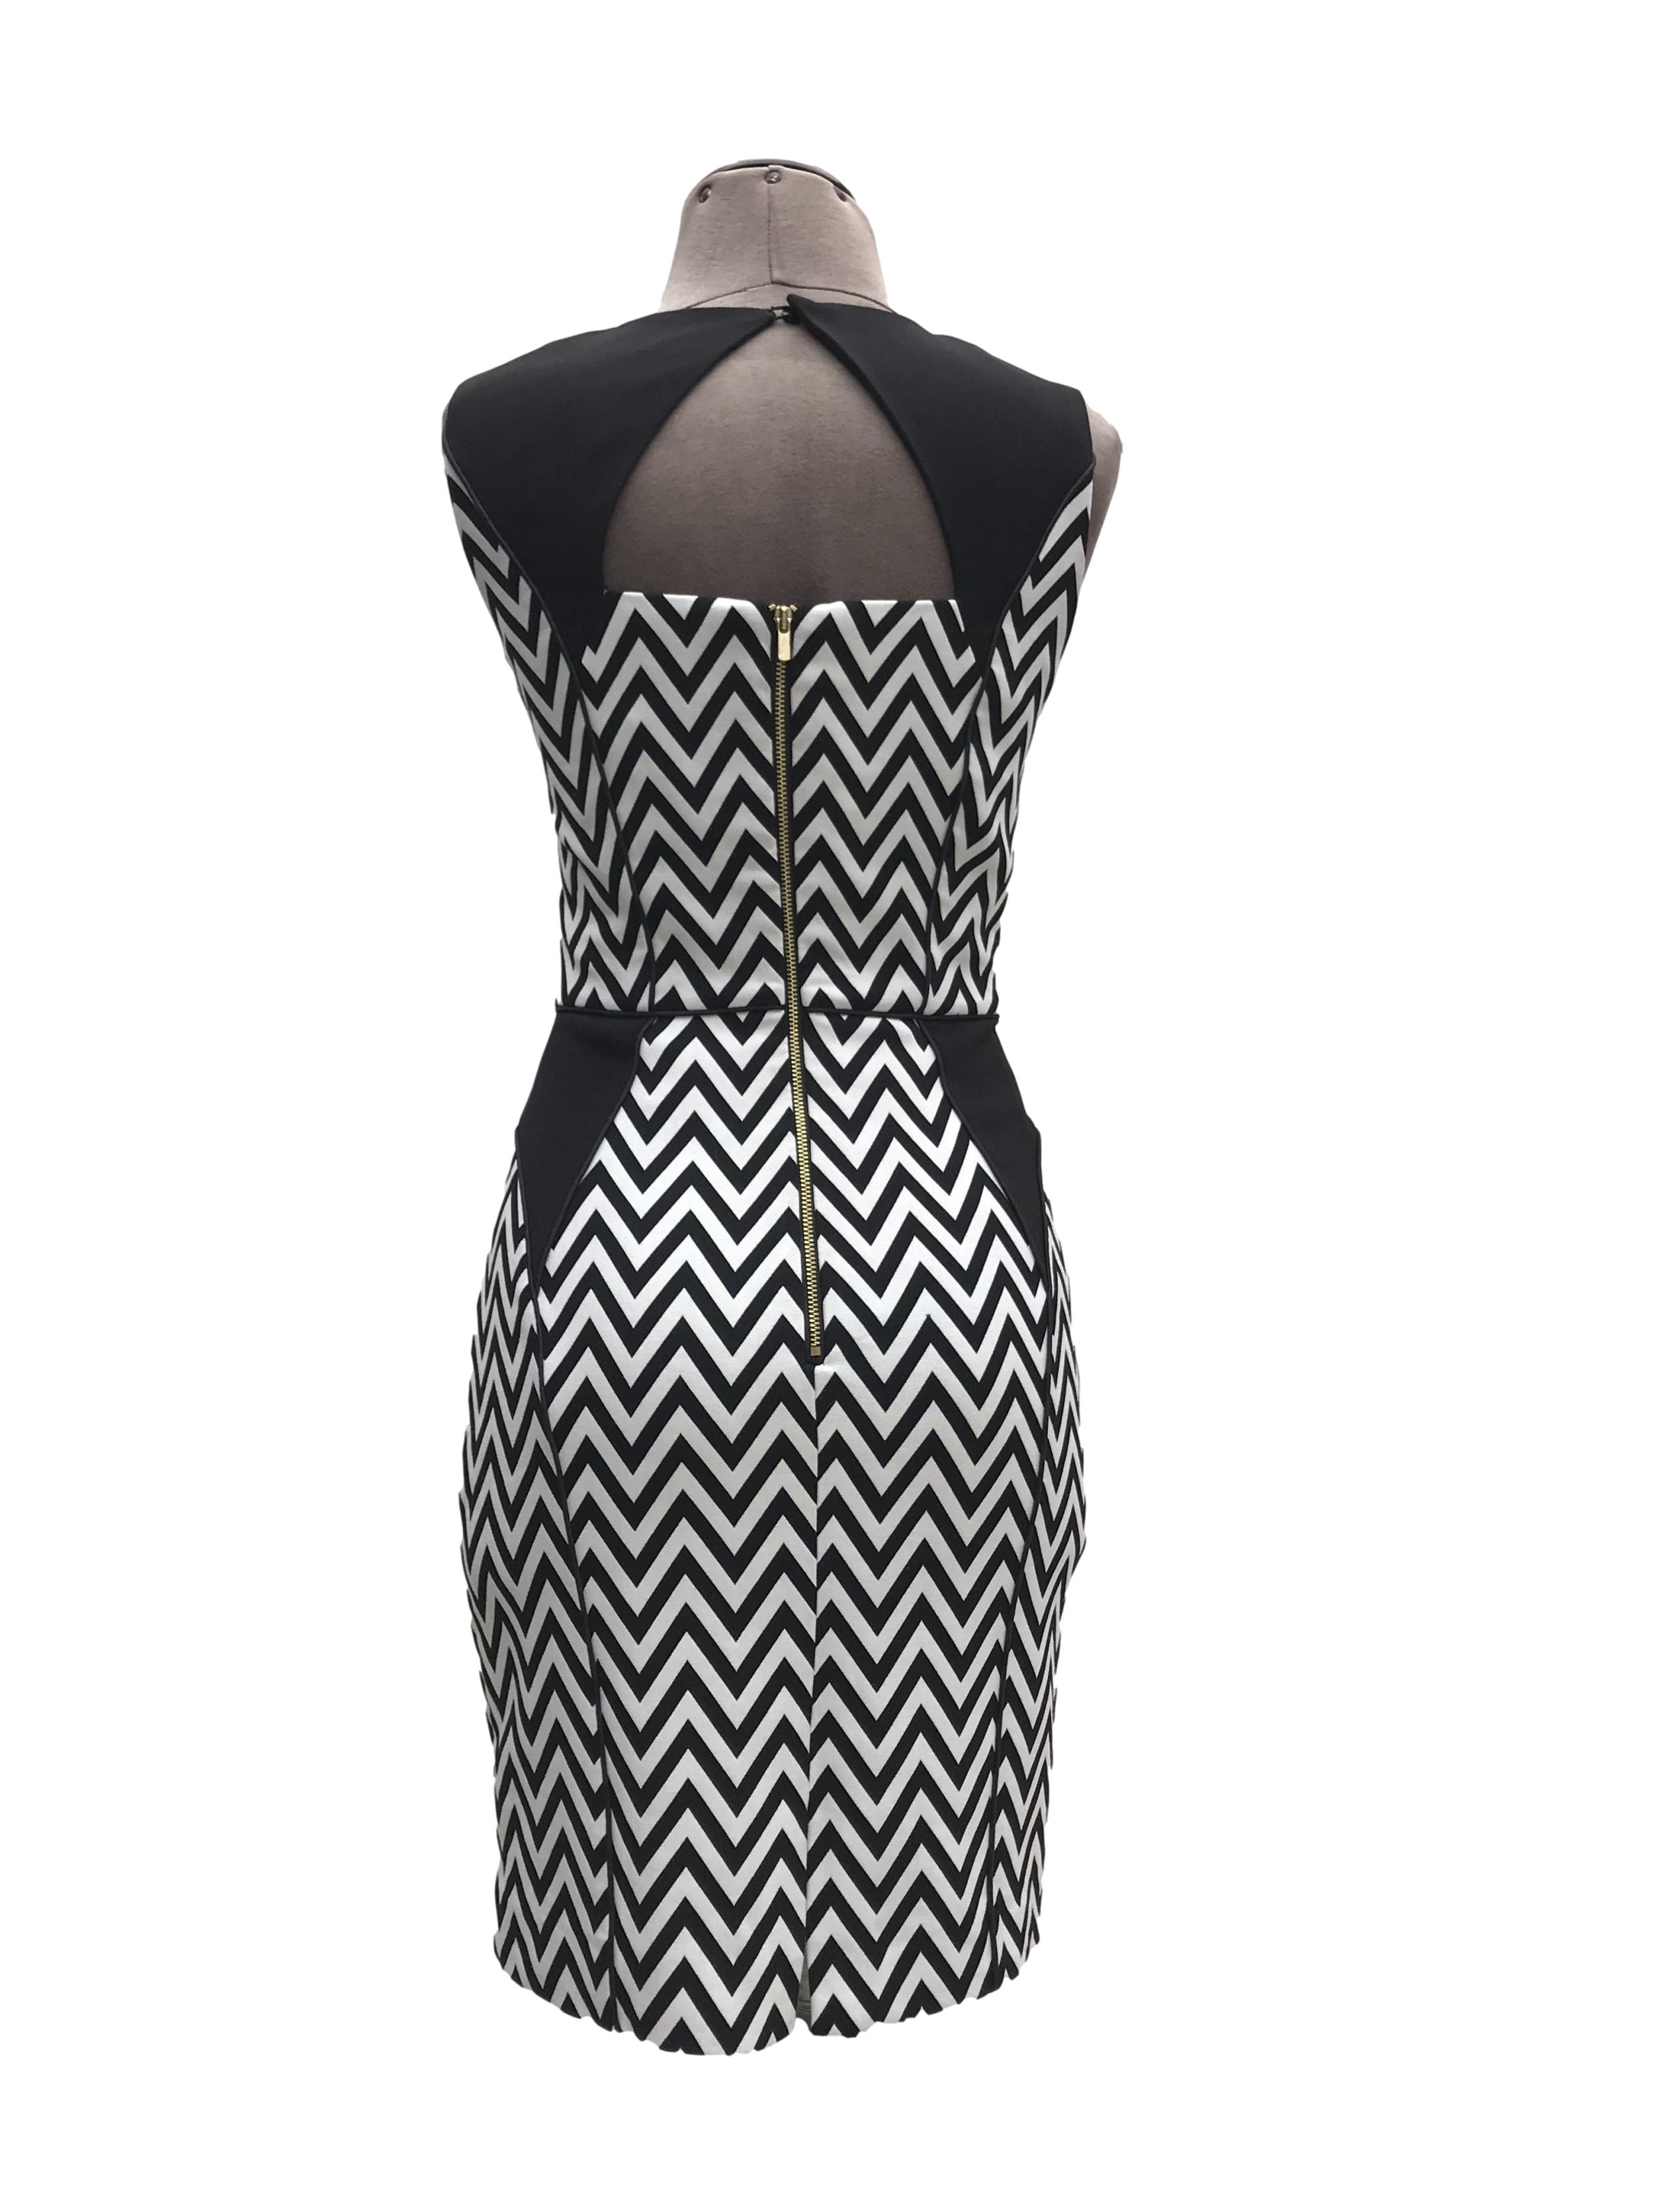 Vestido H&M estampado zigzag blanco y negro, forrado, ribetes negros, cierre y escote posterior. Largo 87cm Precio originsl S/ 130